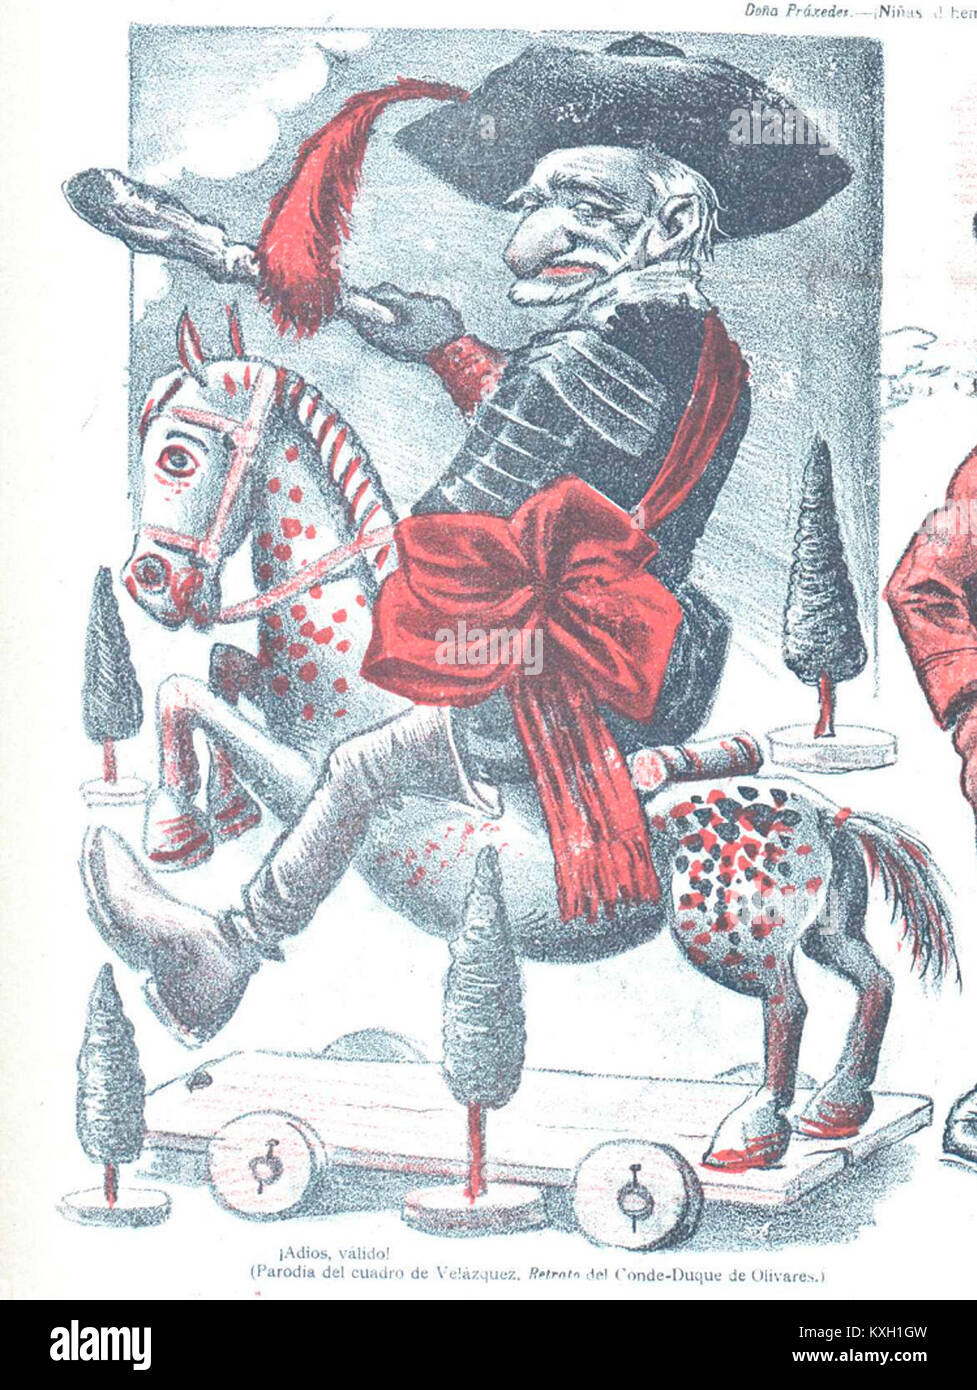 - Adiós, valido. Parodia del retrato del Conde-Duque de Olivares, Don Quijote, 28 de noviembre de 1902 (ritagliate) Foto Stock